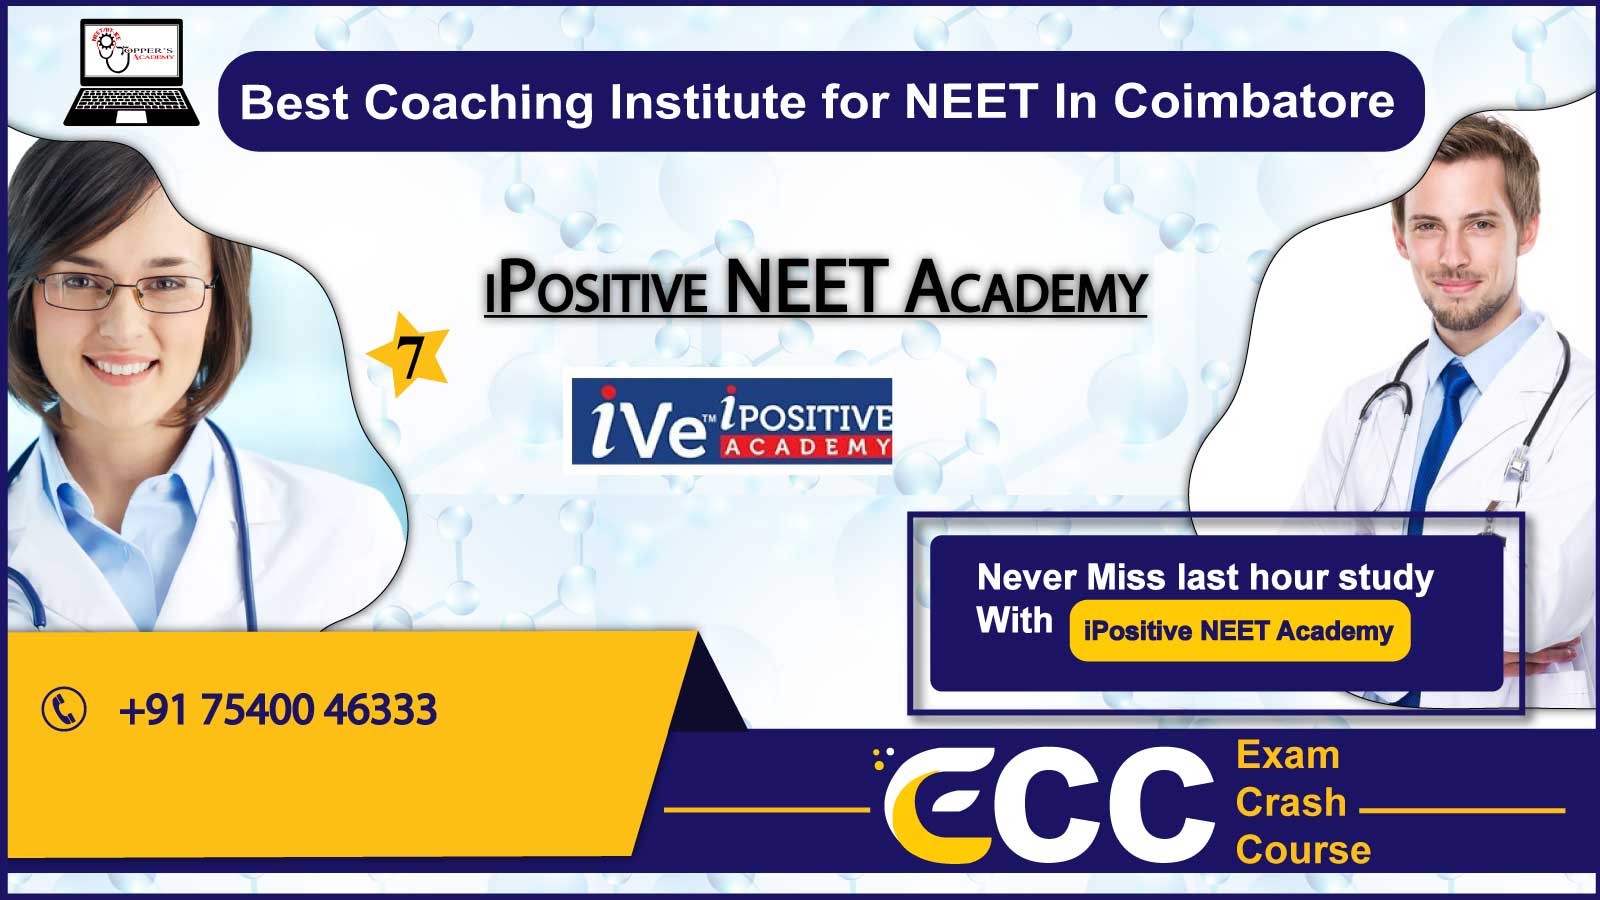 iPositive NEET Academy in Coimbatore